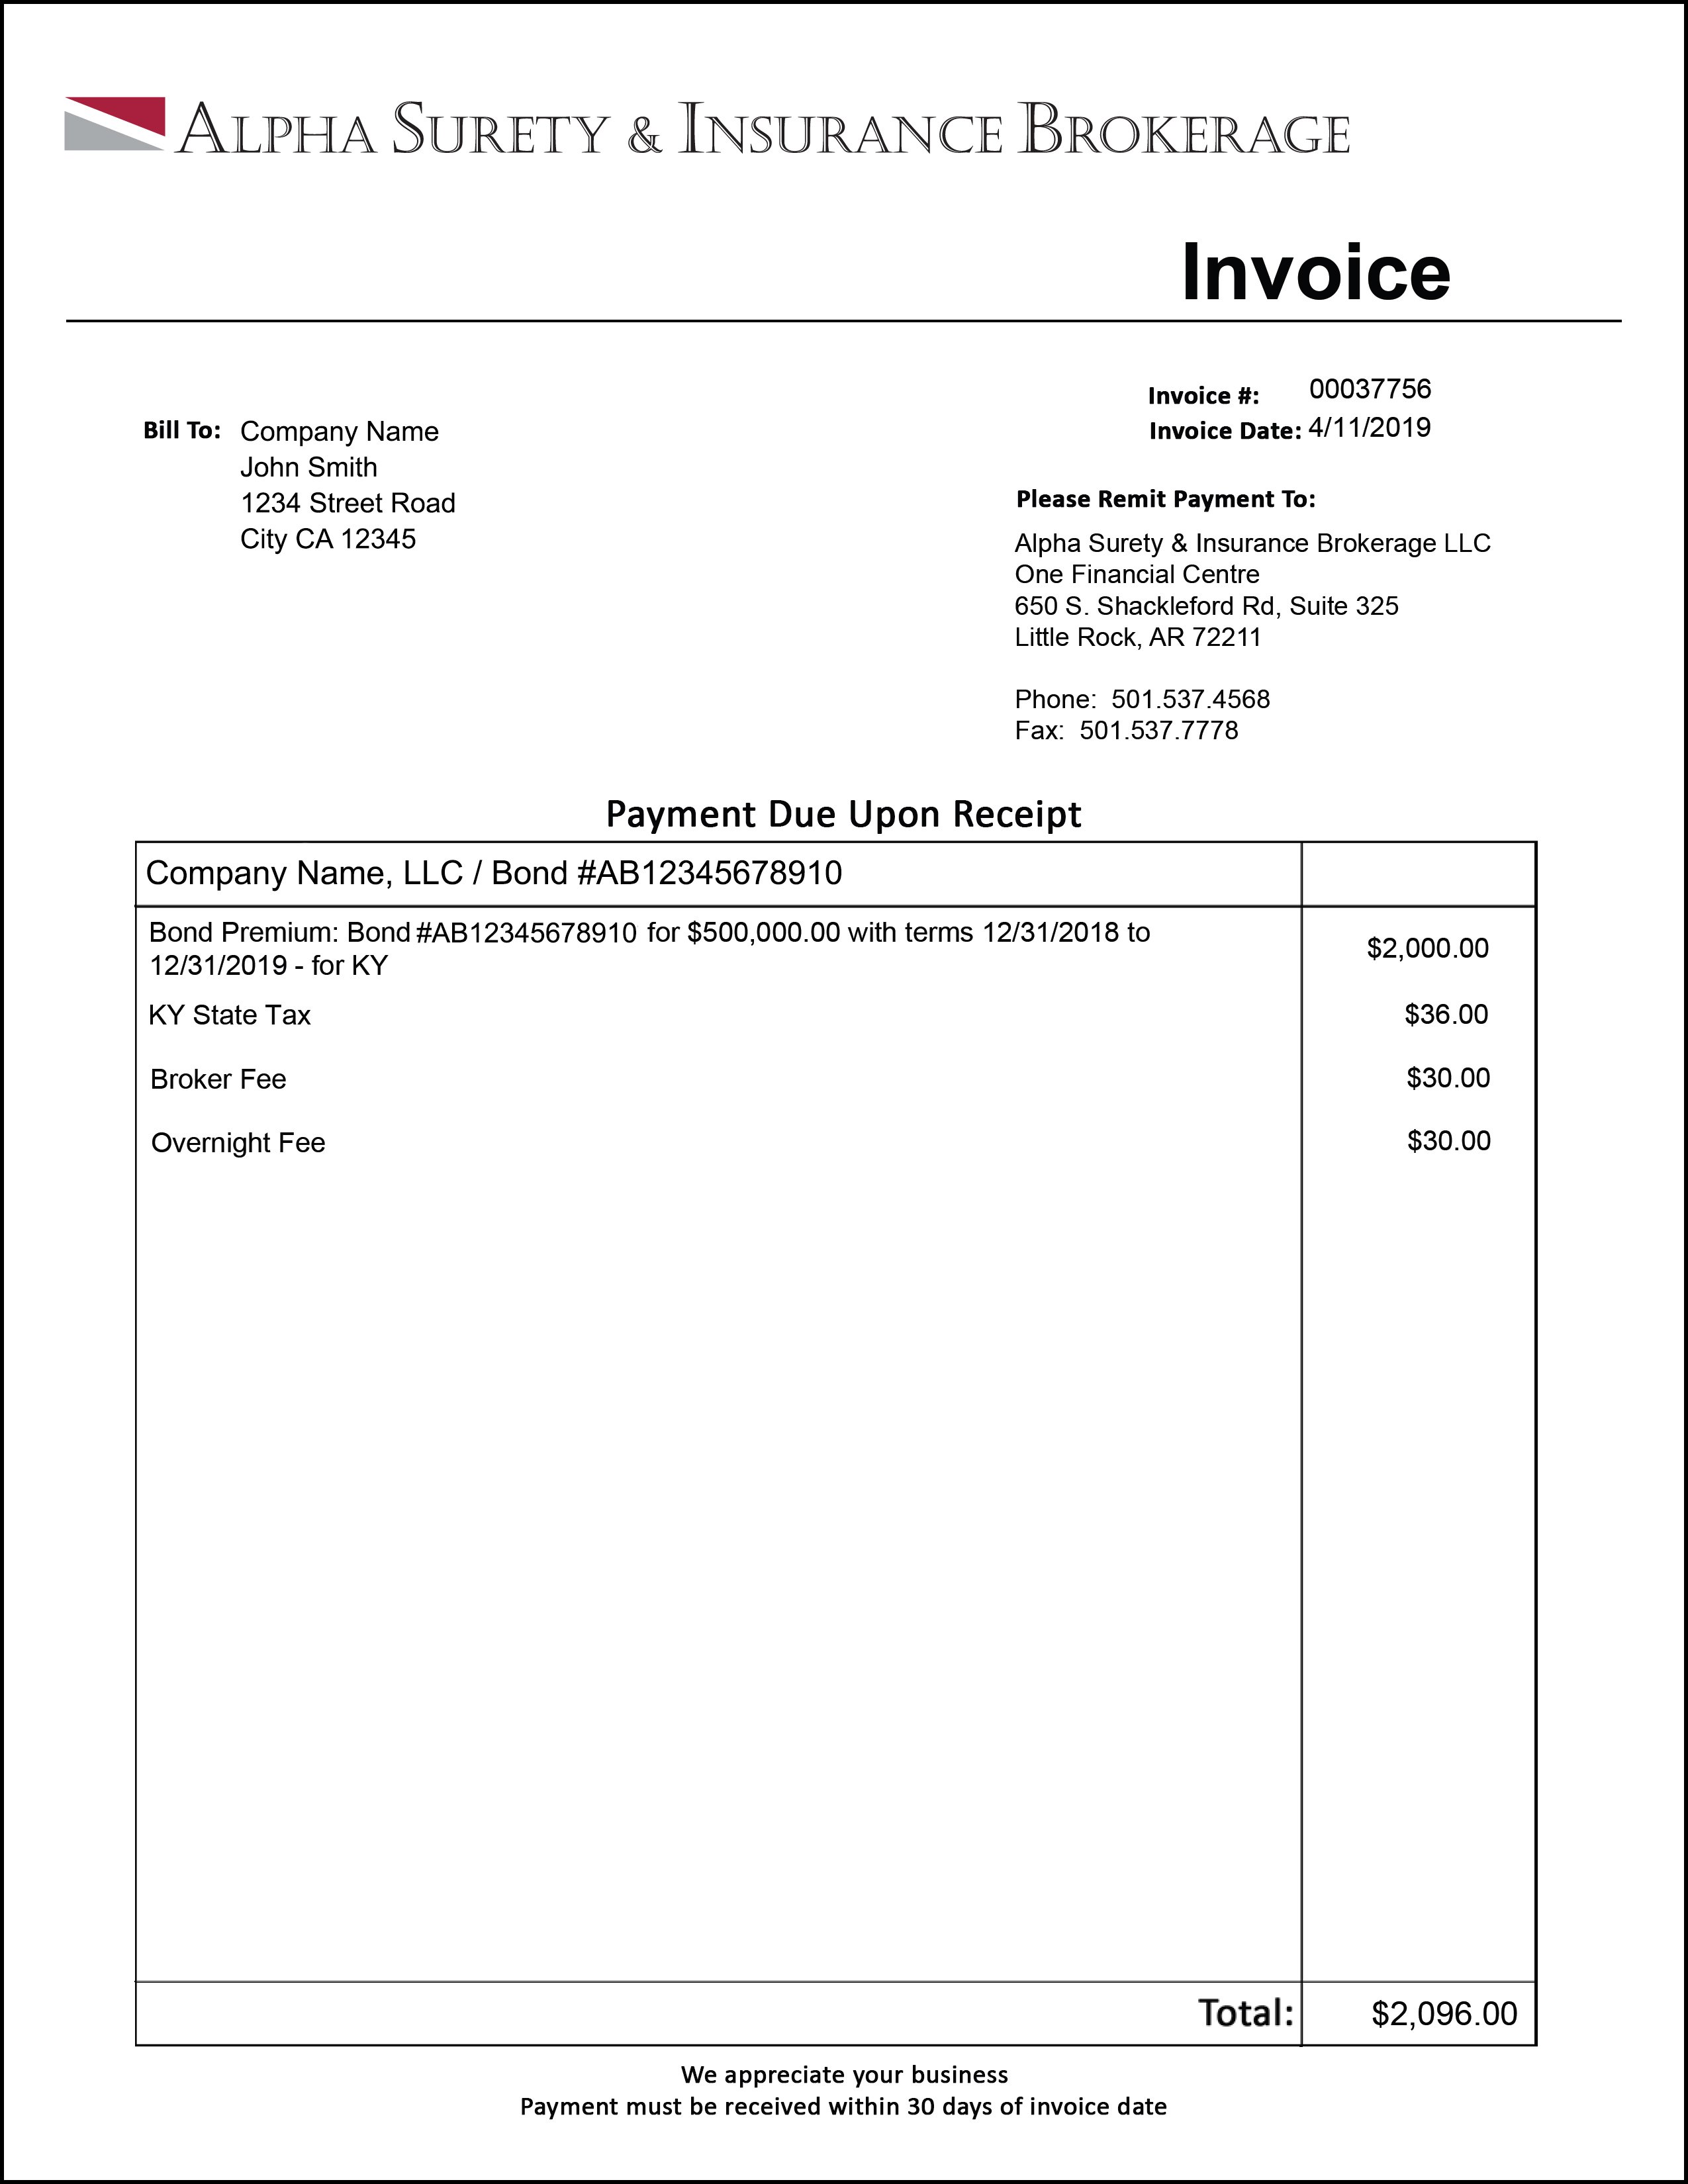 Example Invoice